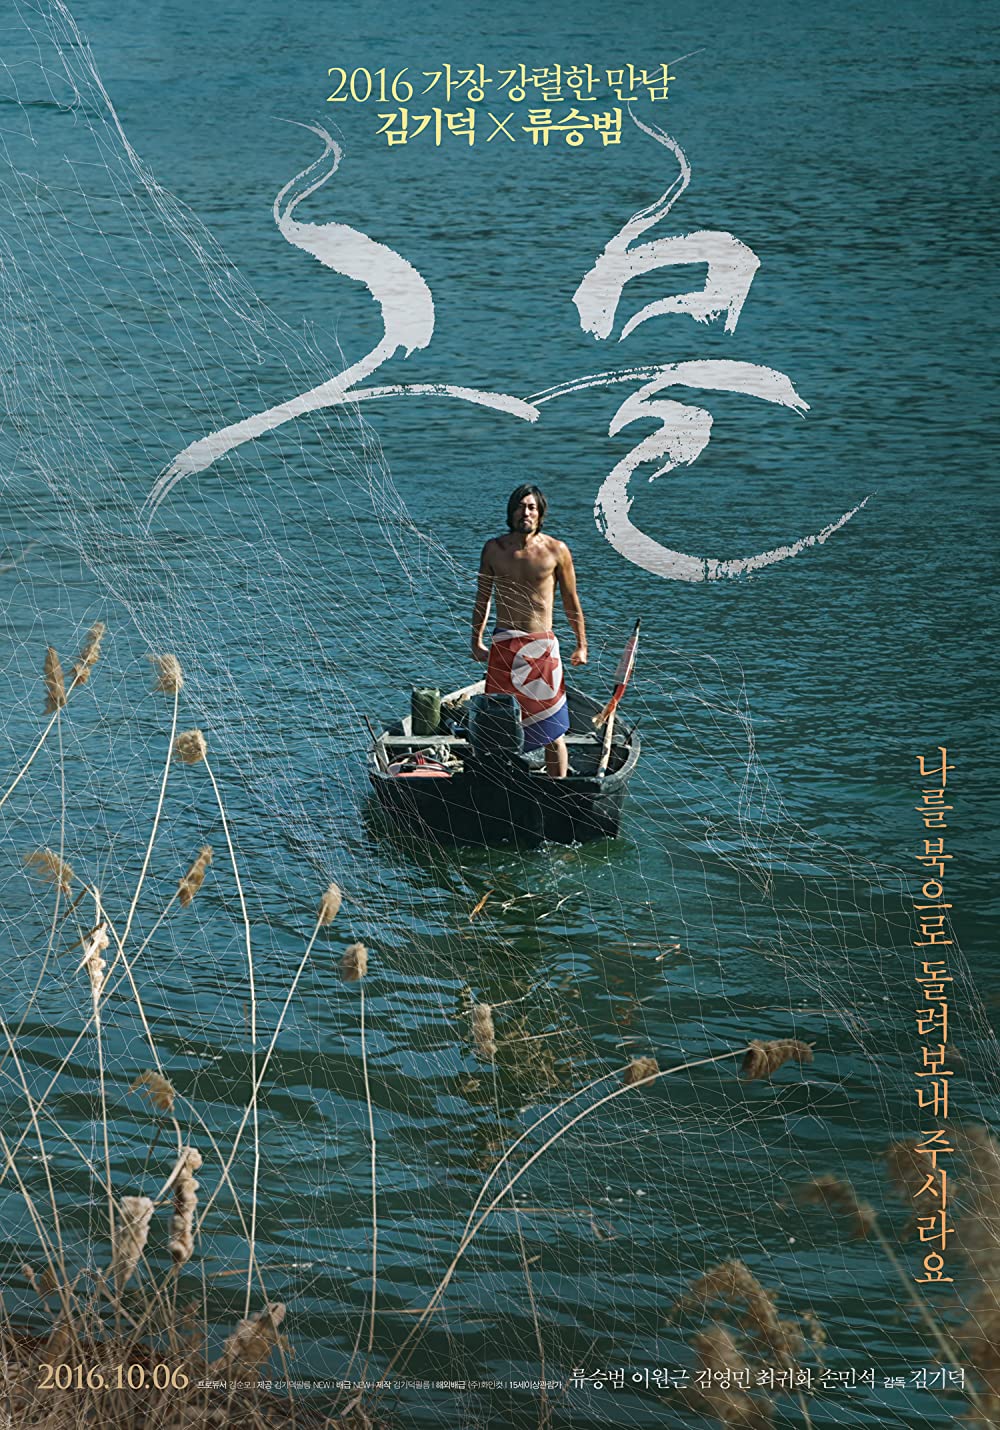 7 Film Korea angkat kisah kemiskinan, penuh cerita miris dan tragis